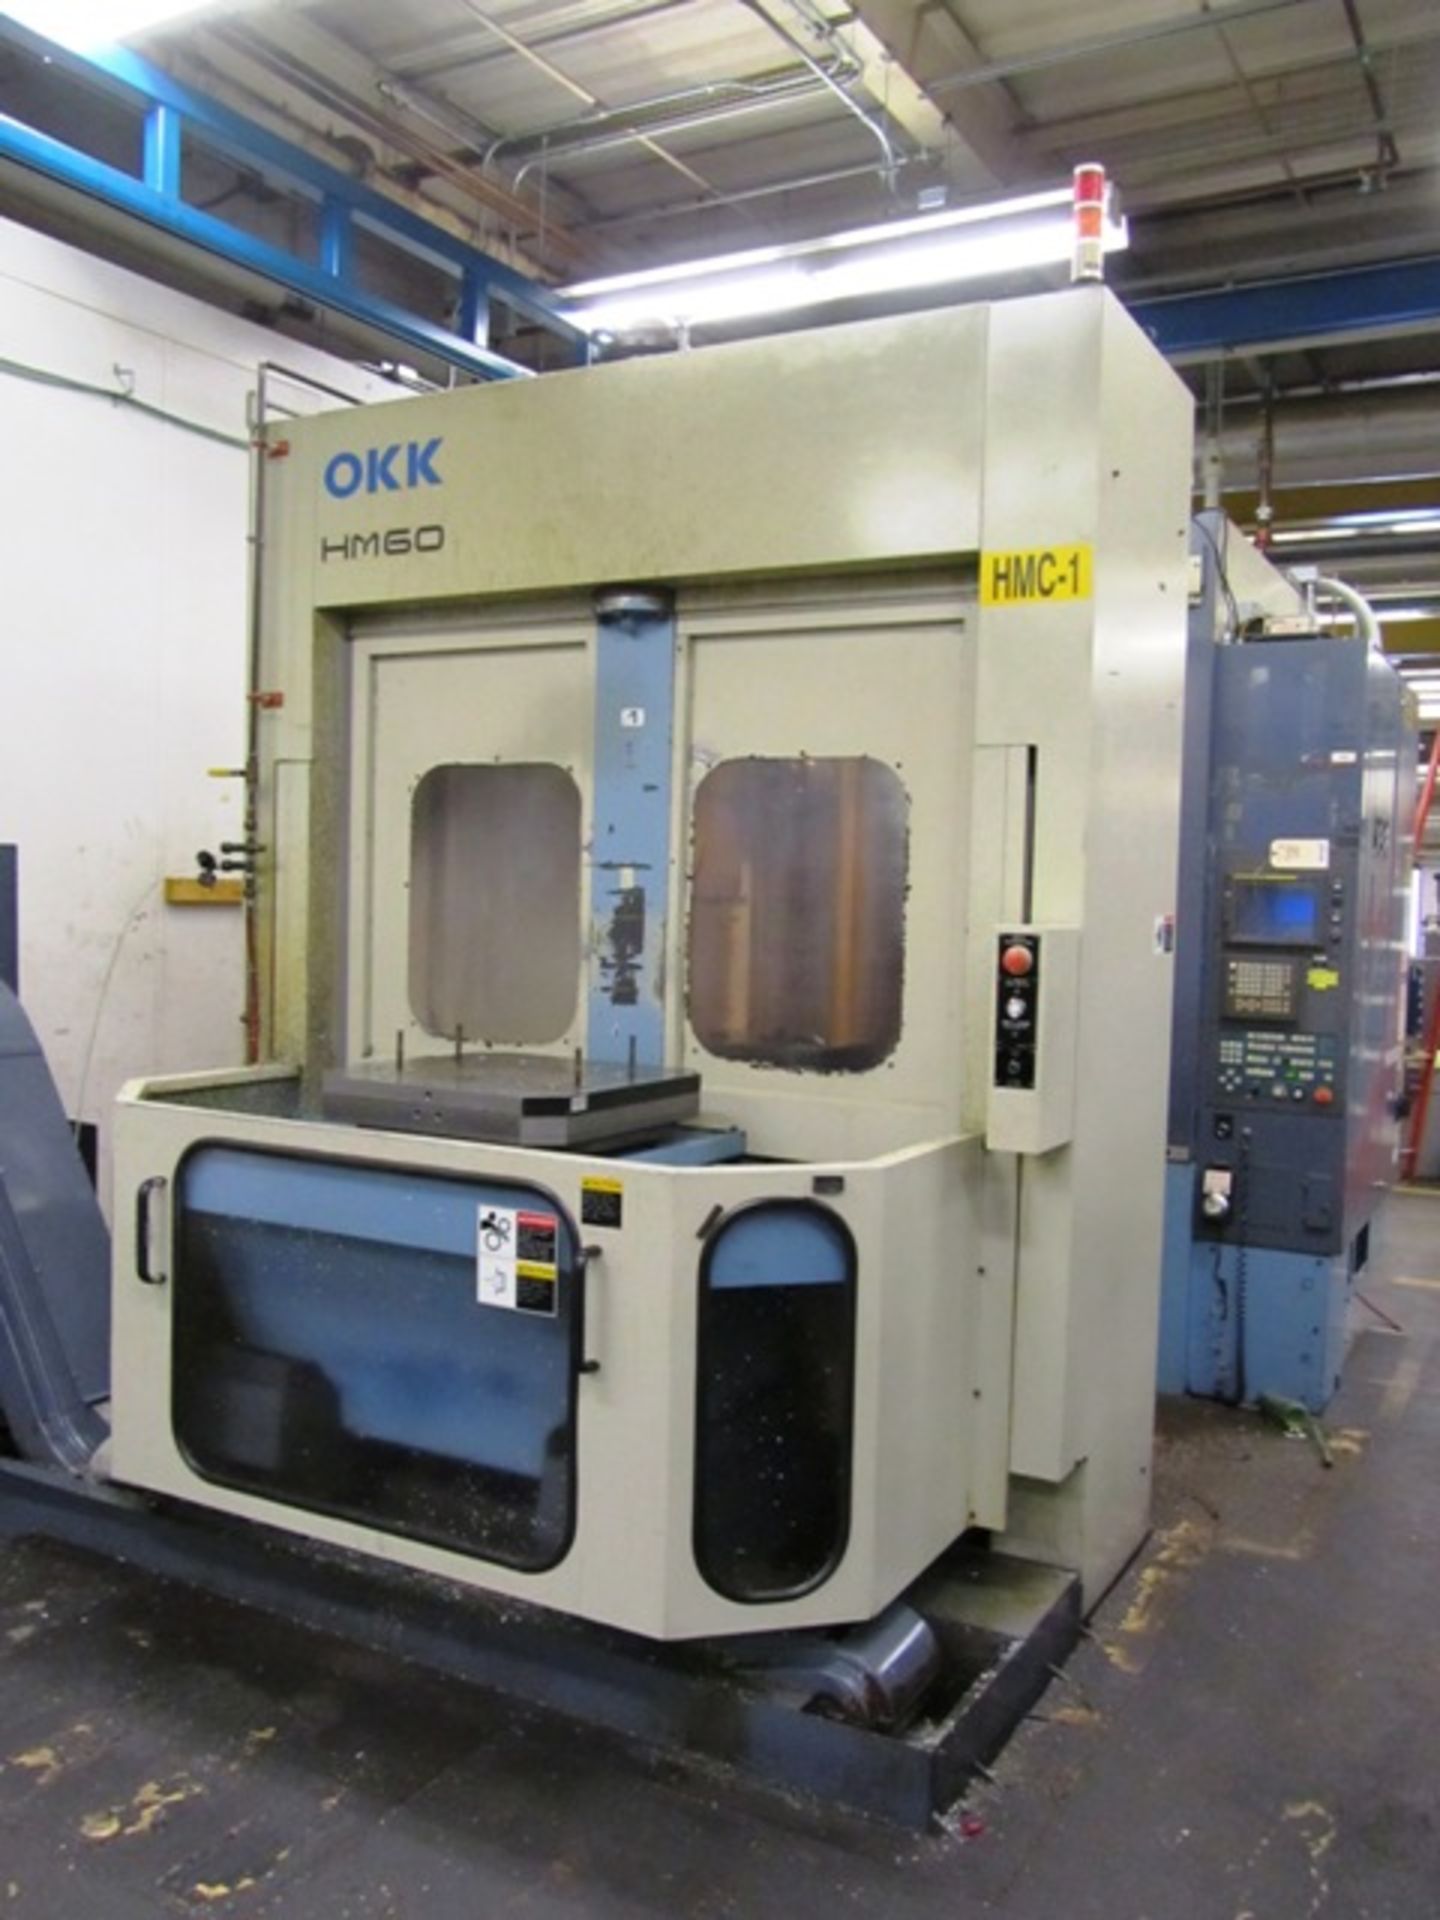 OKK HM60 CNC Horizontal Machining Center - Image 3 of 7